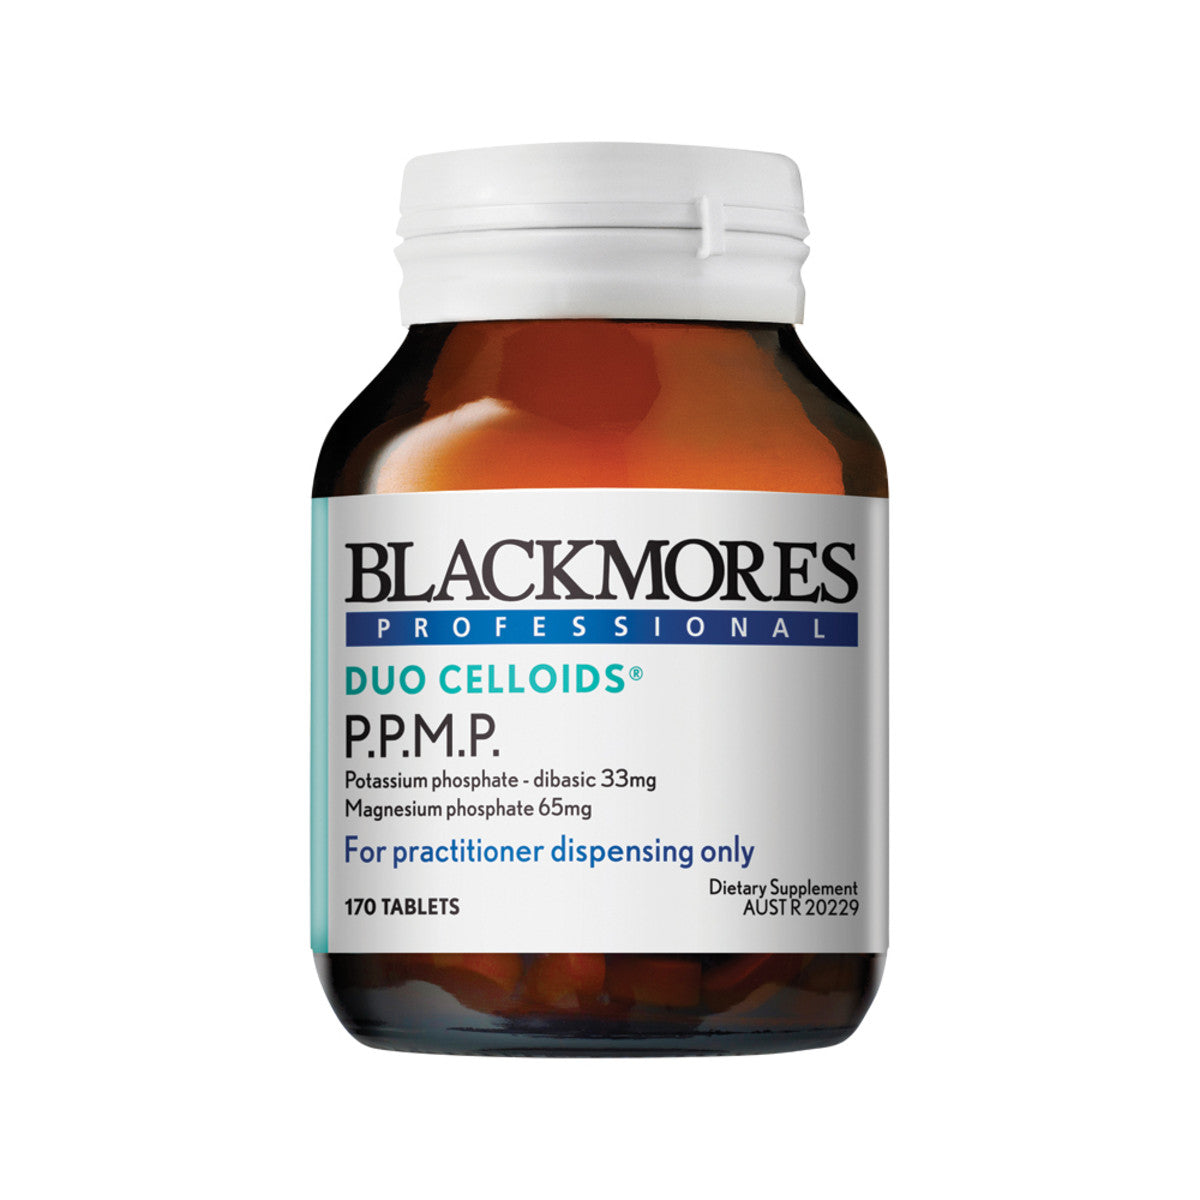 Blackmores - Prof P.P.M.P.